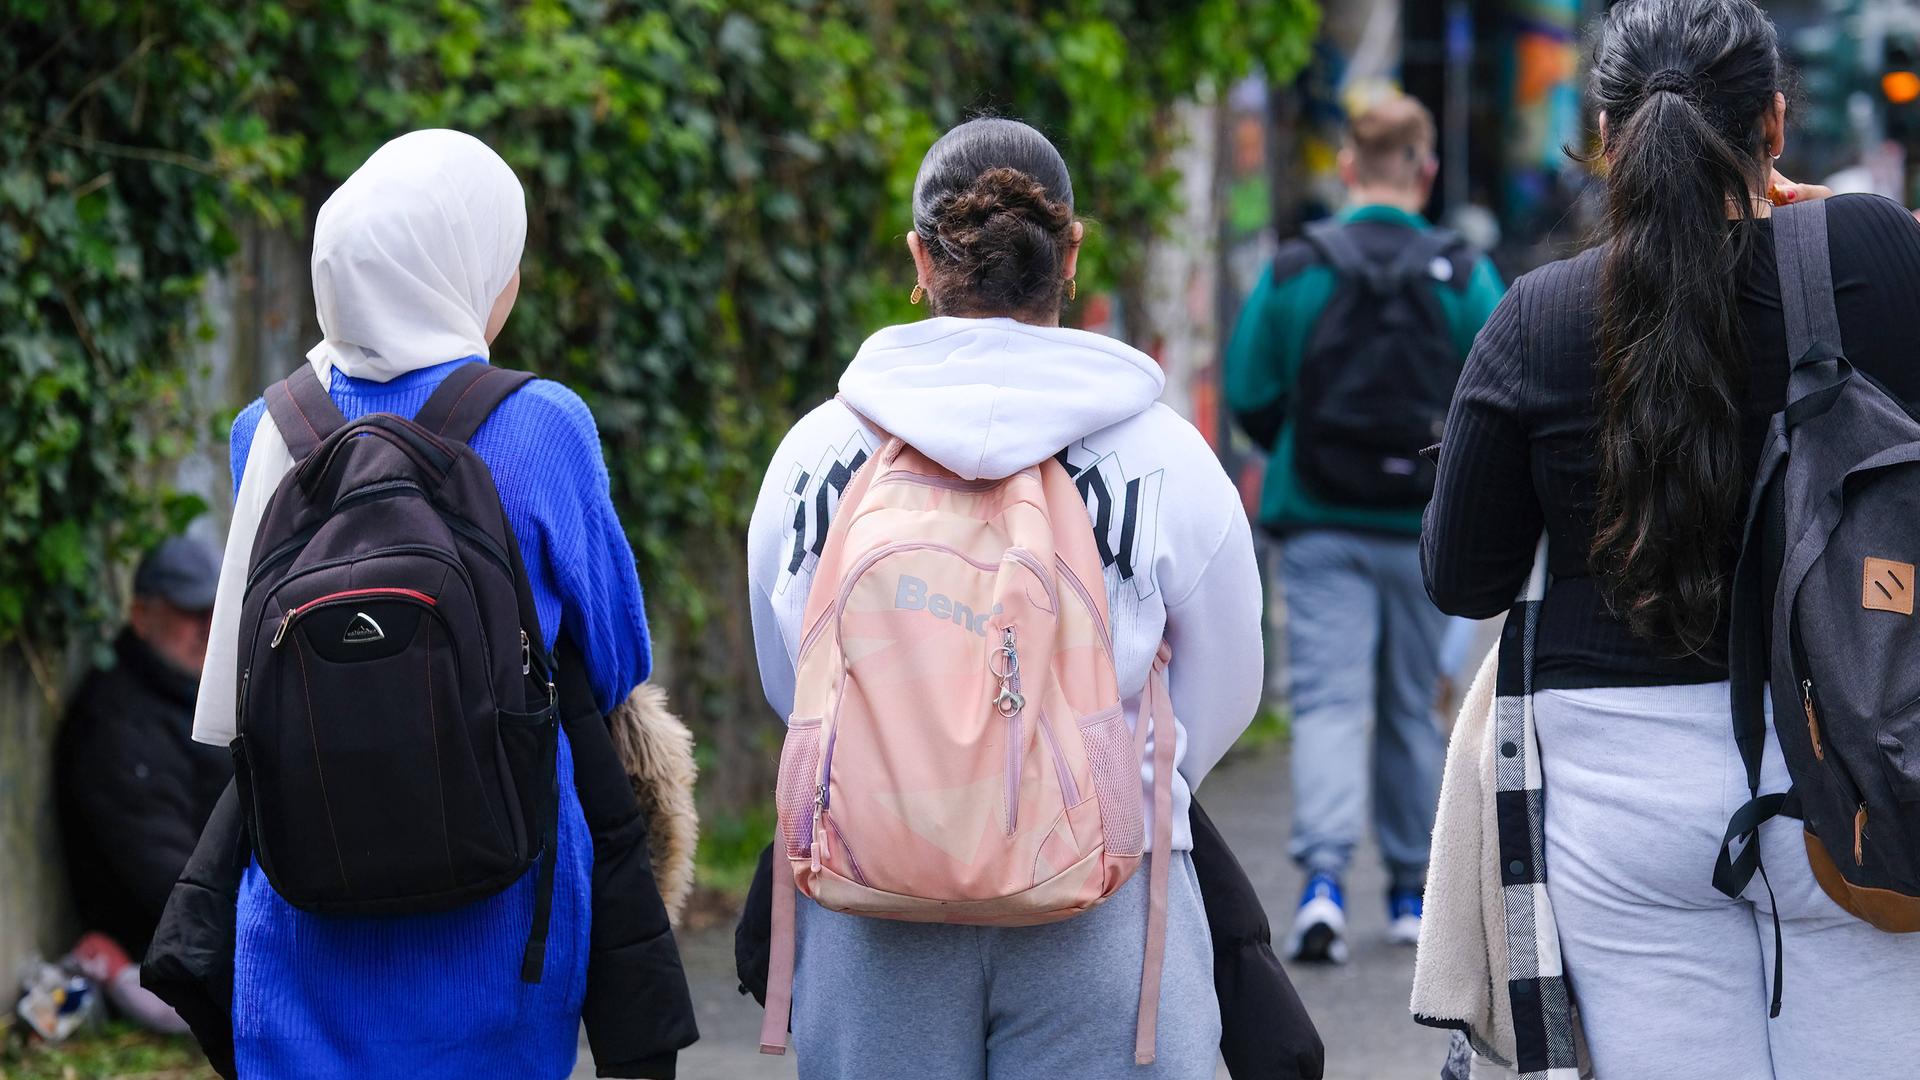 Jugendliche mit Schulranzen und Rucksack auf dem Schulweg. Das Mädchen links auf dem Bild trägt ein Kopftuch.